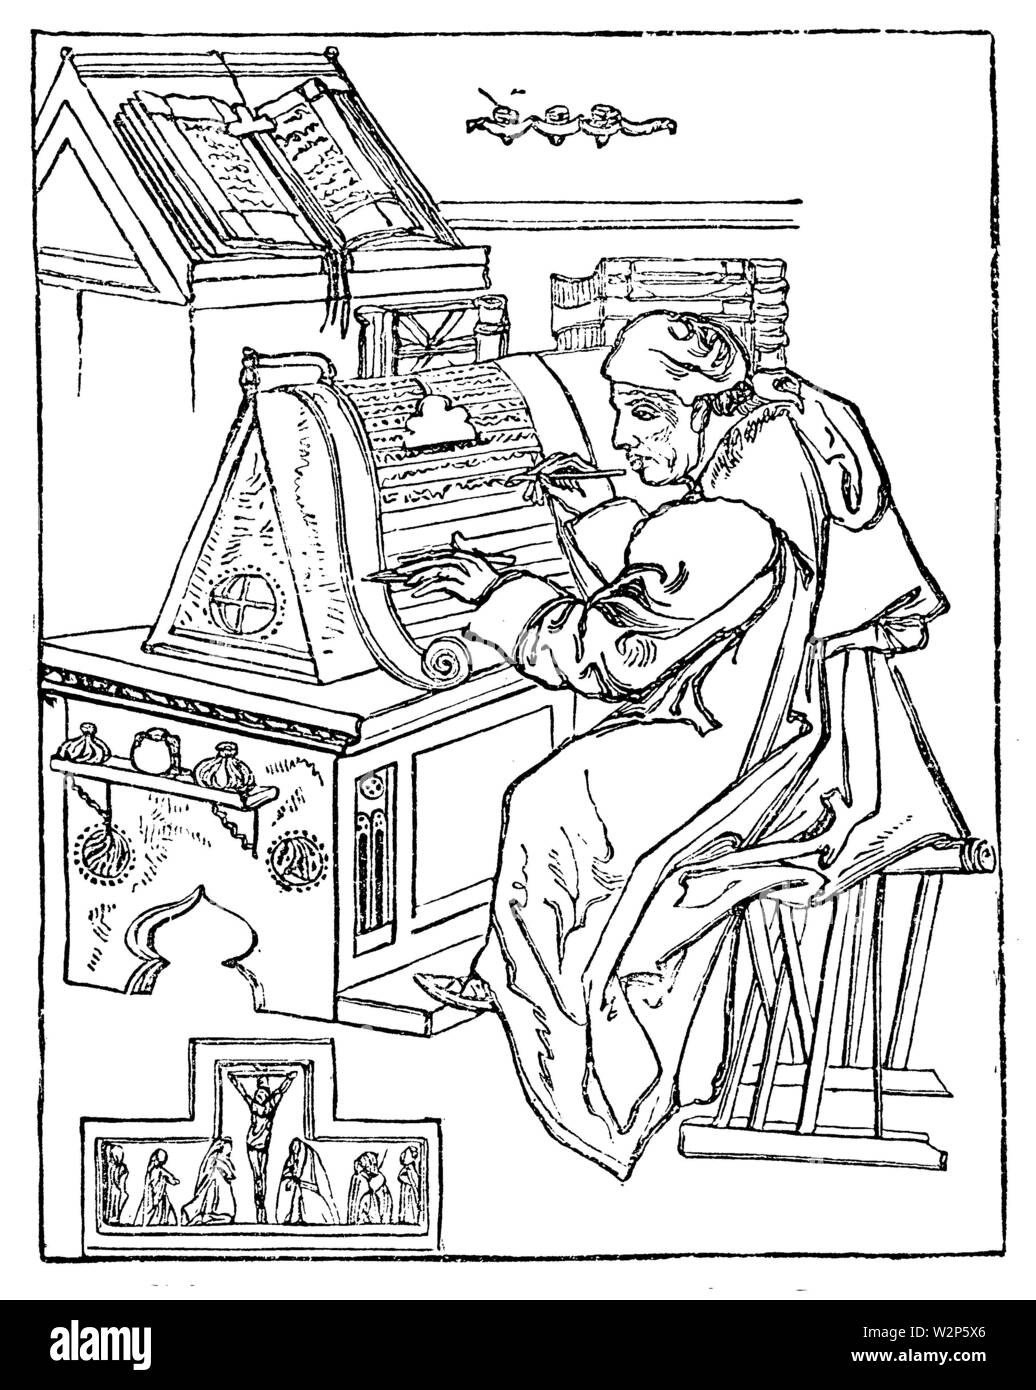 Écrit moine dans sa cellule, entouré d'ustensiles pour l'écriture et éclairant. D'après un manuscrit médiéval, , l'histoire littéraire (livre, 1881) Banque D'Images